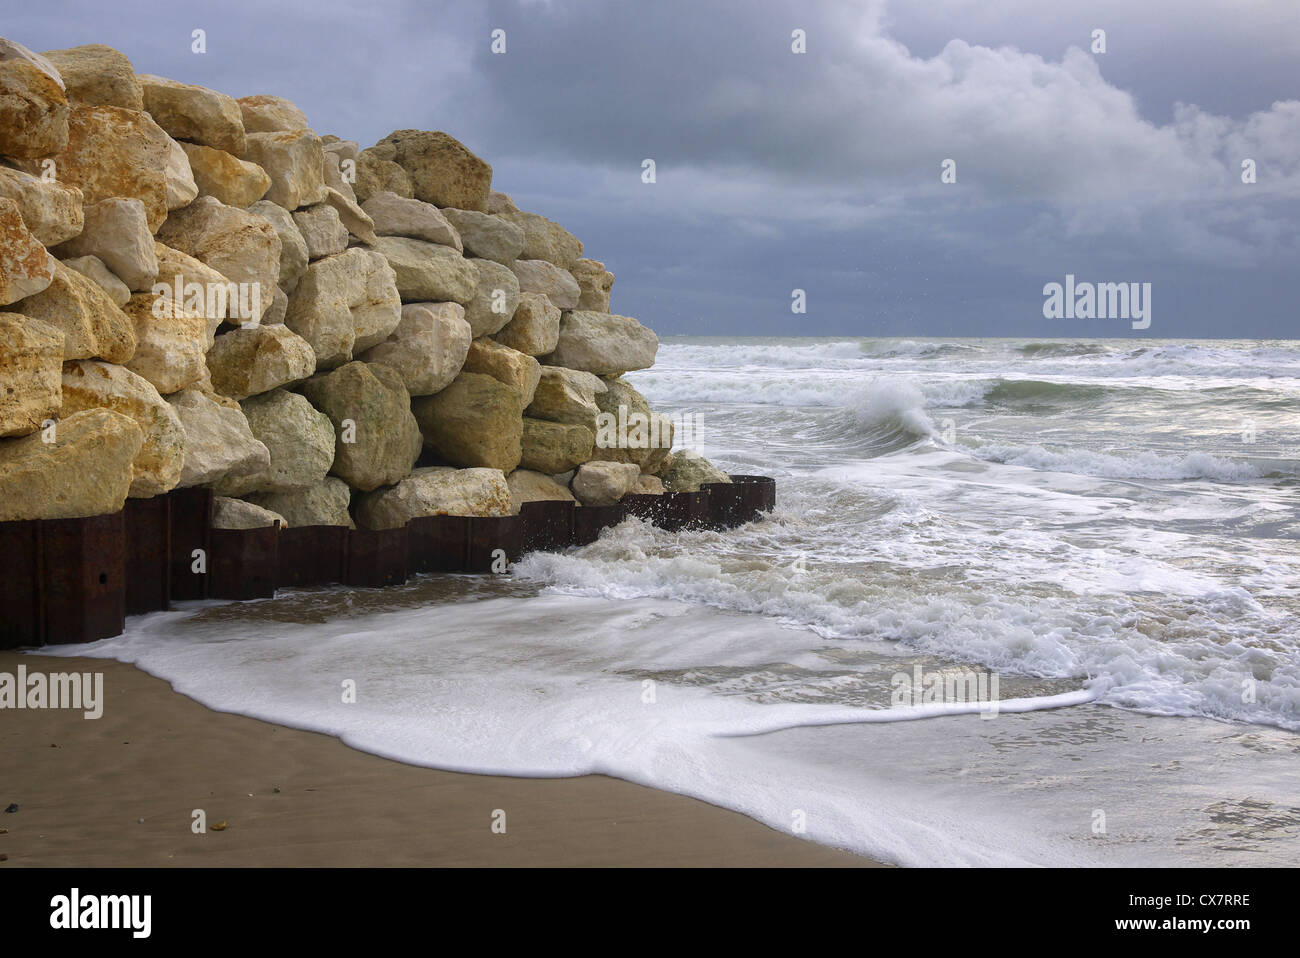 Atlantic sea defences at La Amelie-su-mer in France Stock Photo